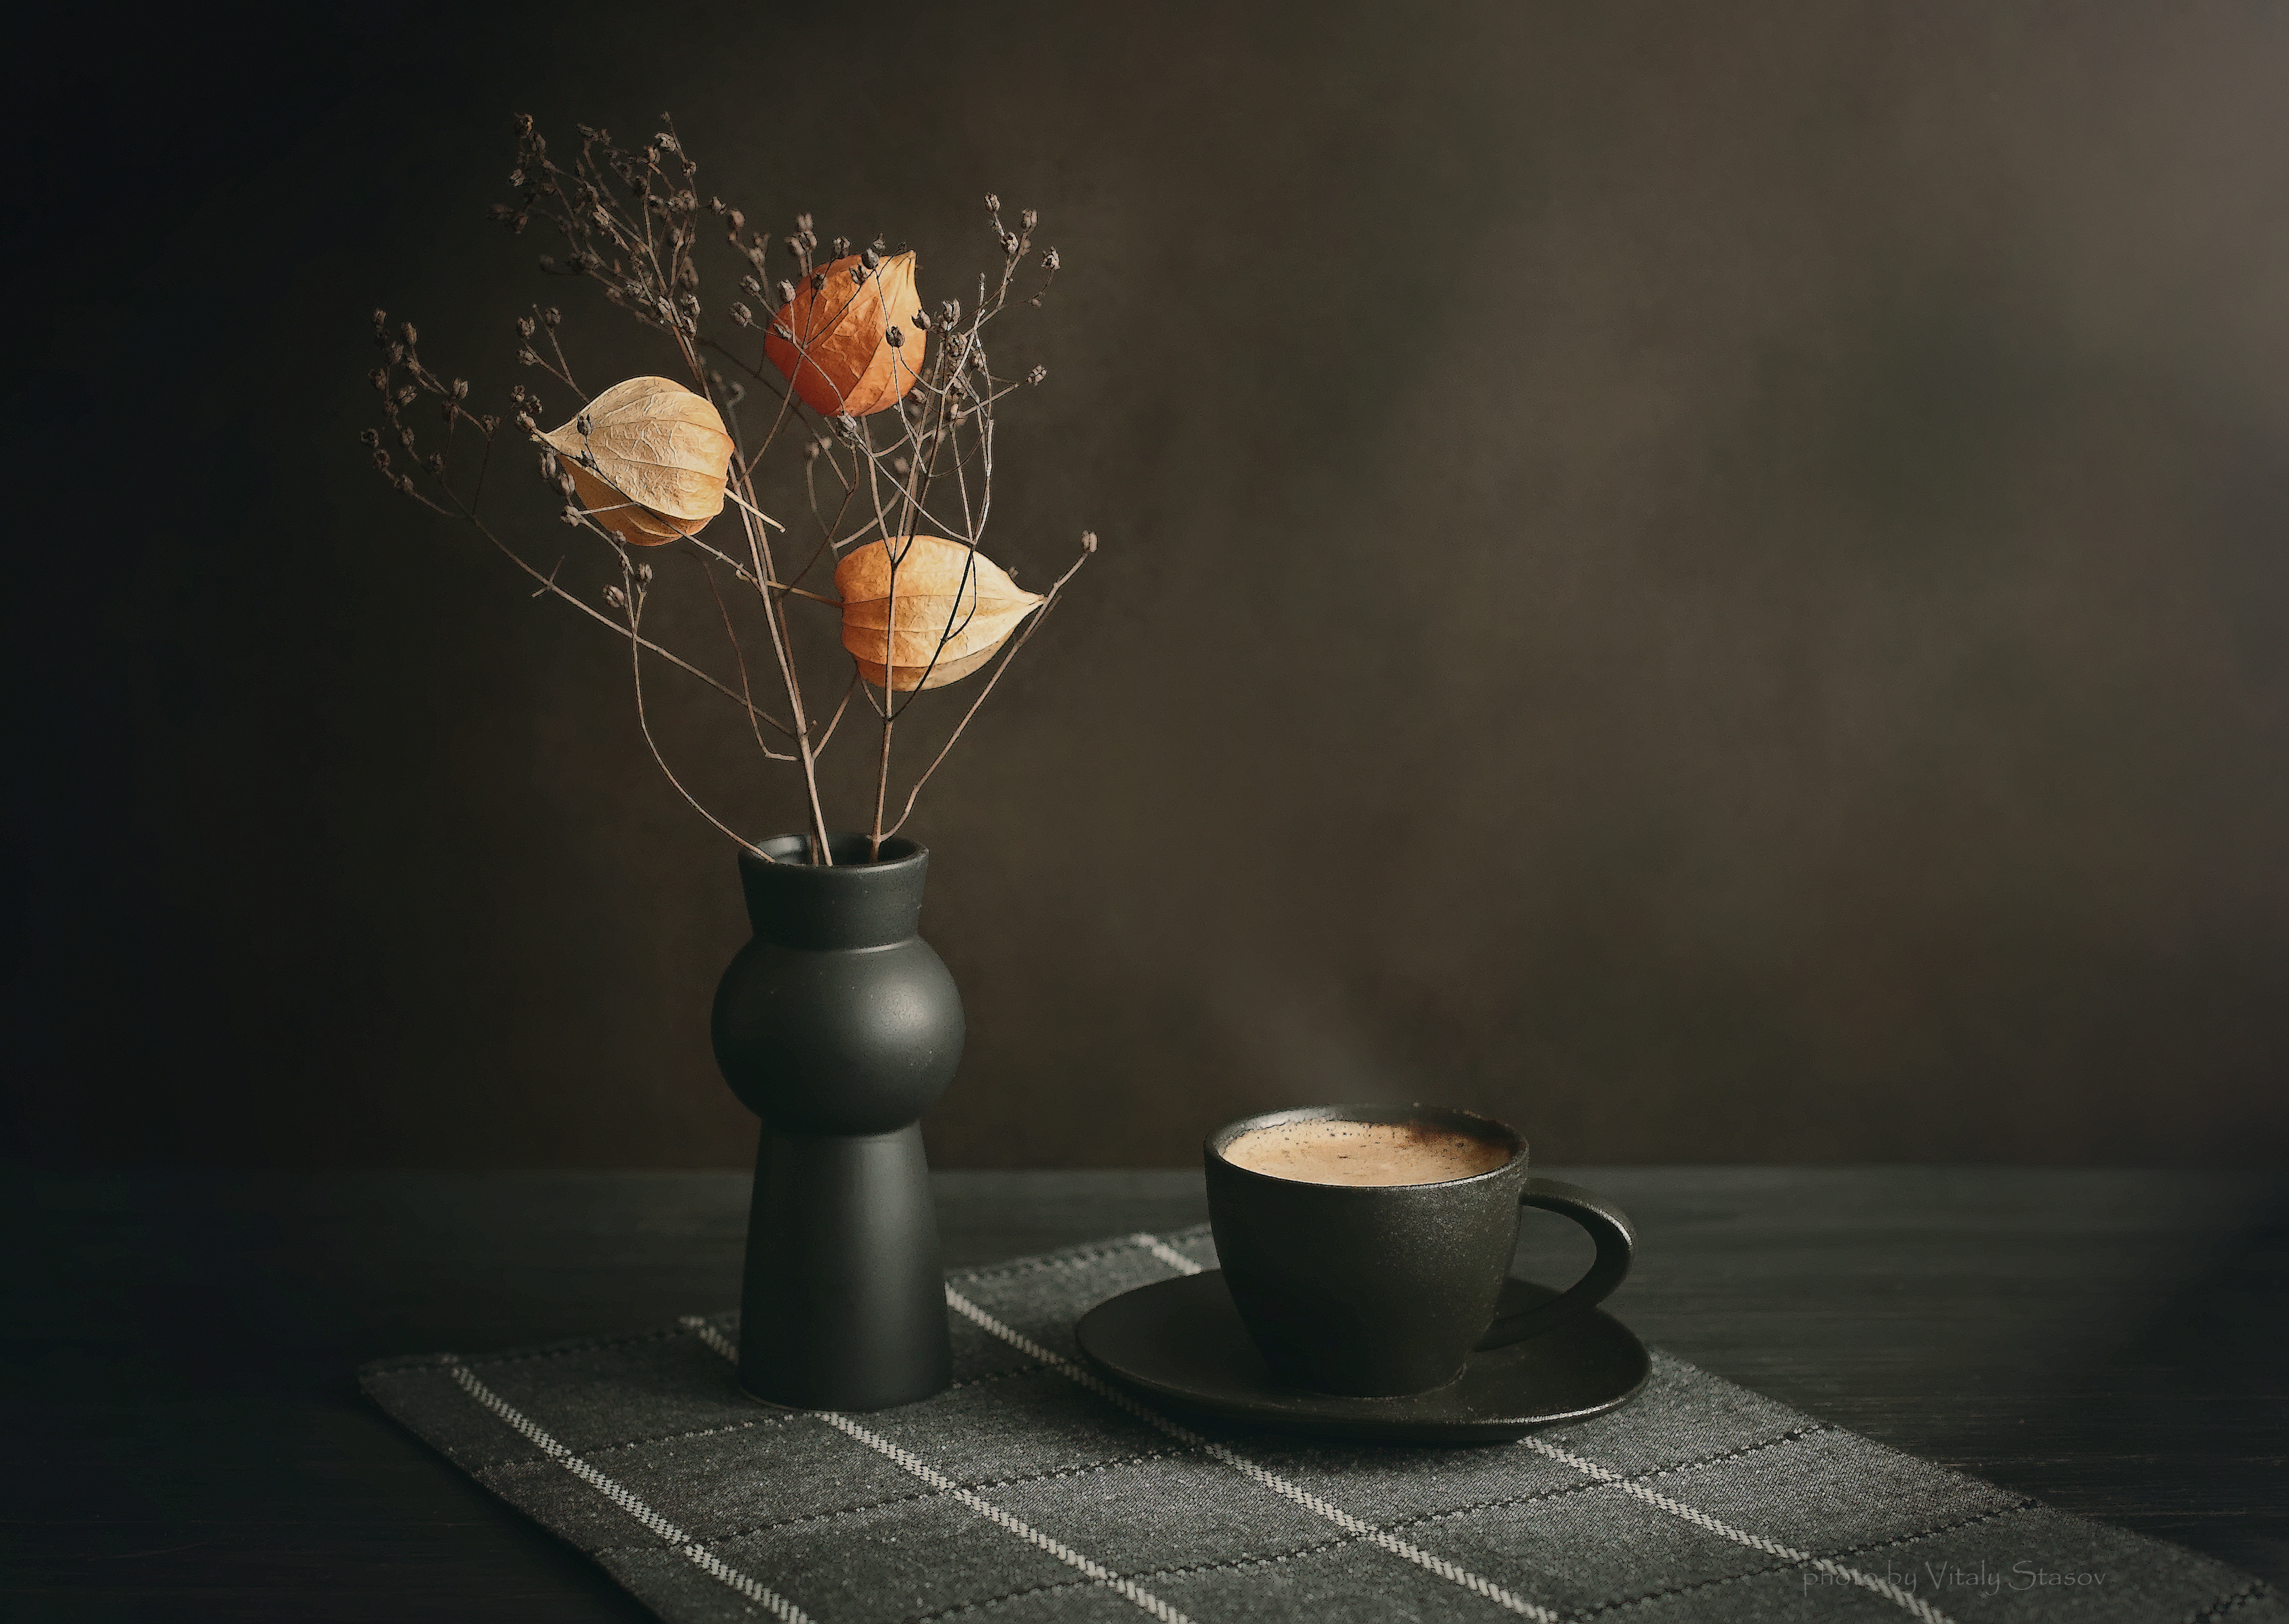 кофе, физалис, на столе, сухоцвет, ваза, минимализм, темный, фон, натюморт, Стасов Виталий